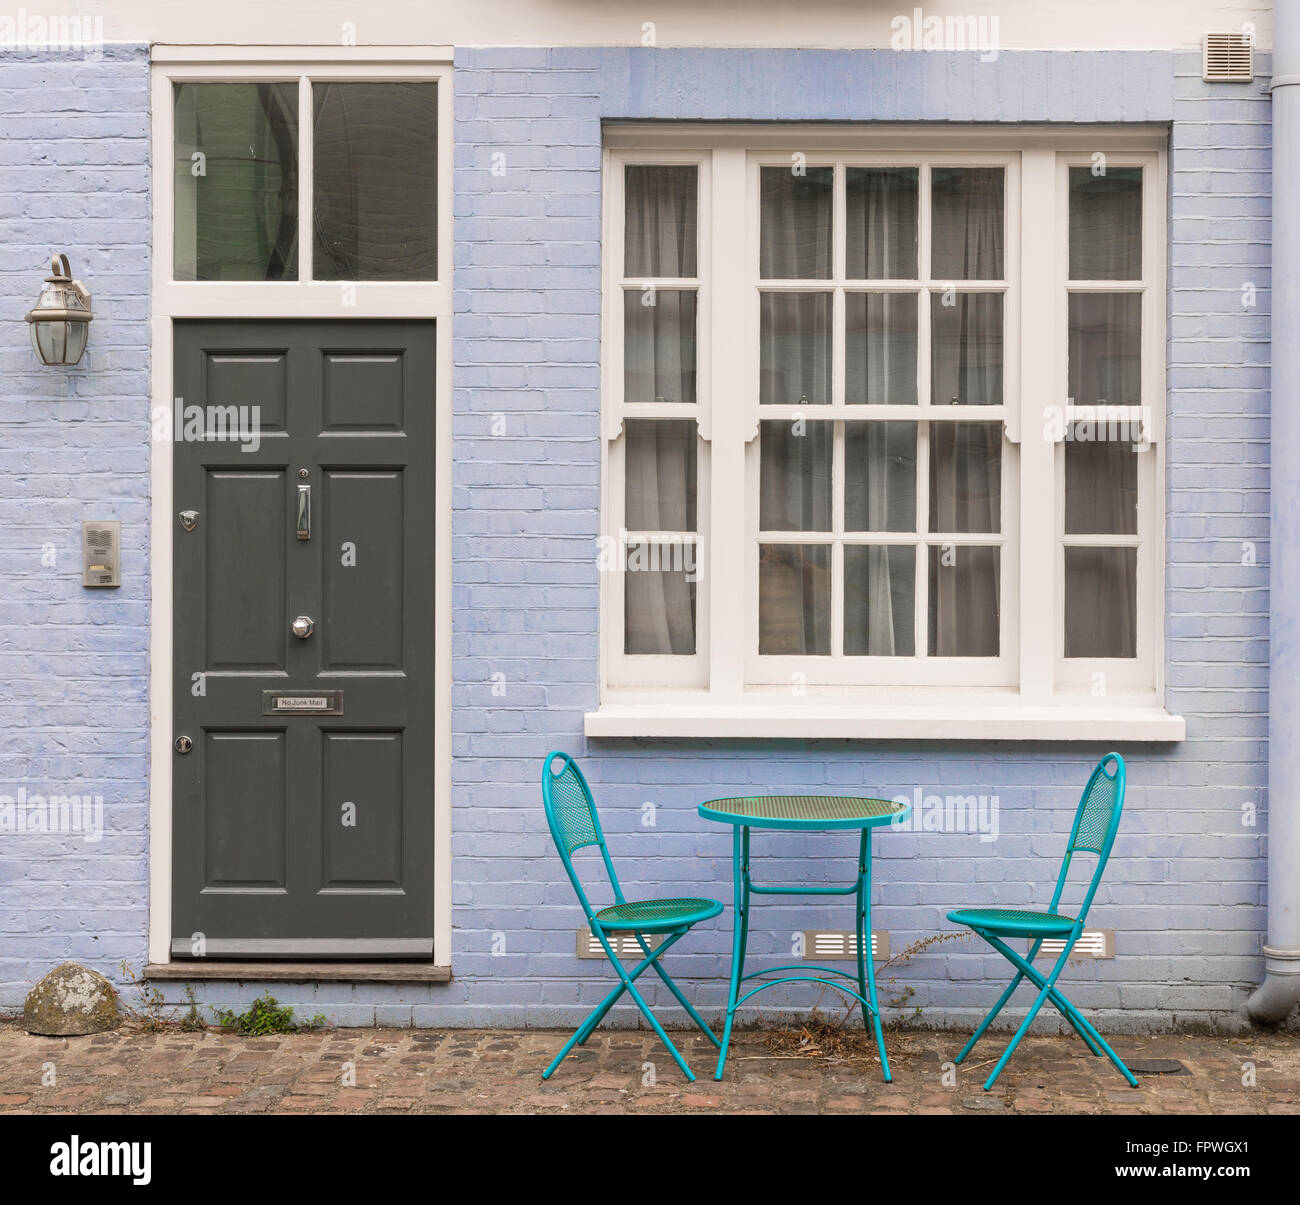 Elegante Puerta De Entrada Verde Azul De Una Casa Con Dos Lámparas Y Timbre  Foto de archivo - Imagen de blanco, ladrillos: 240807838